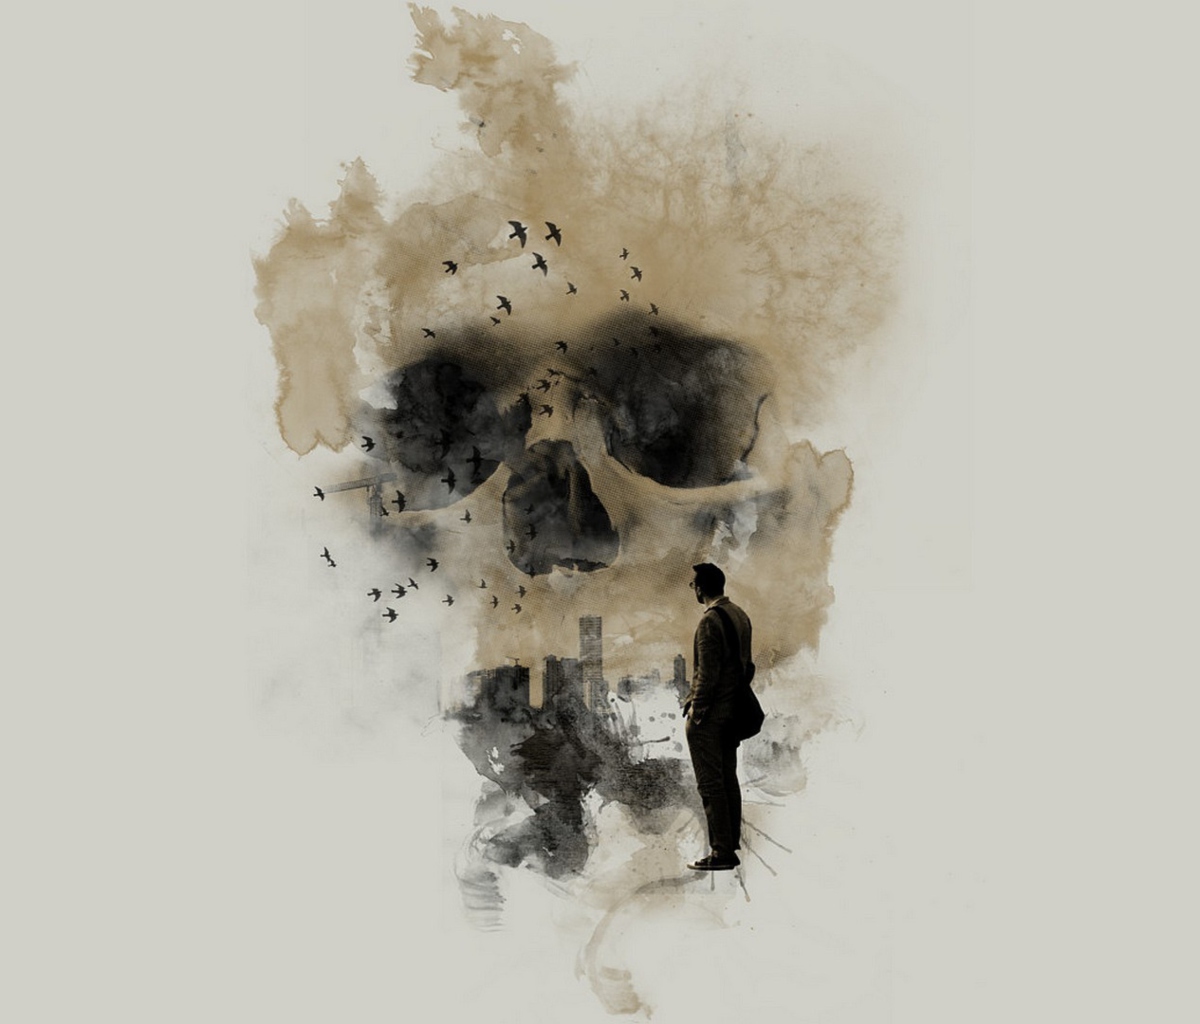 Das Man Looking At Skull City Wallpaper 1200x1024